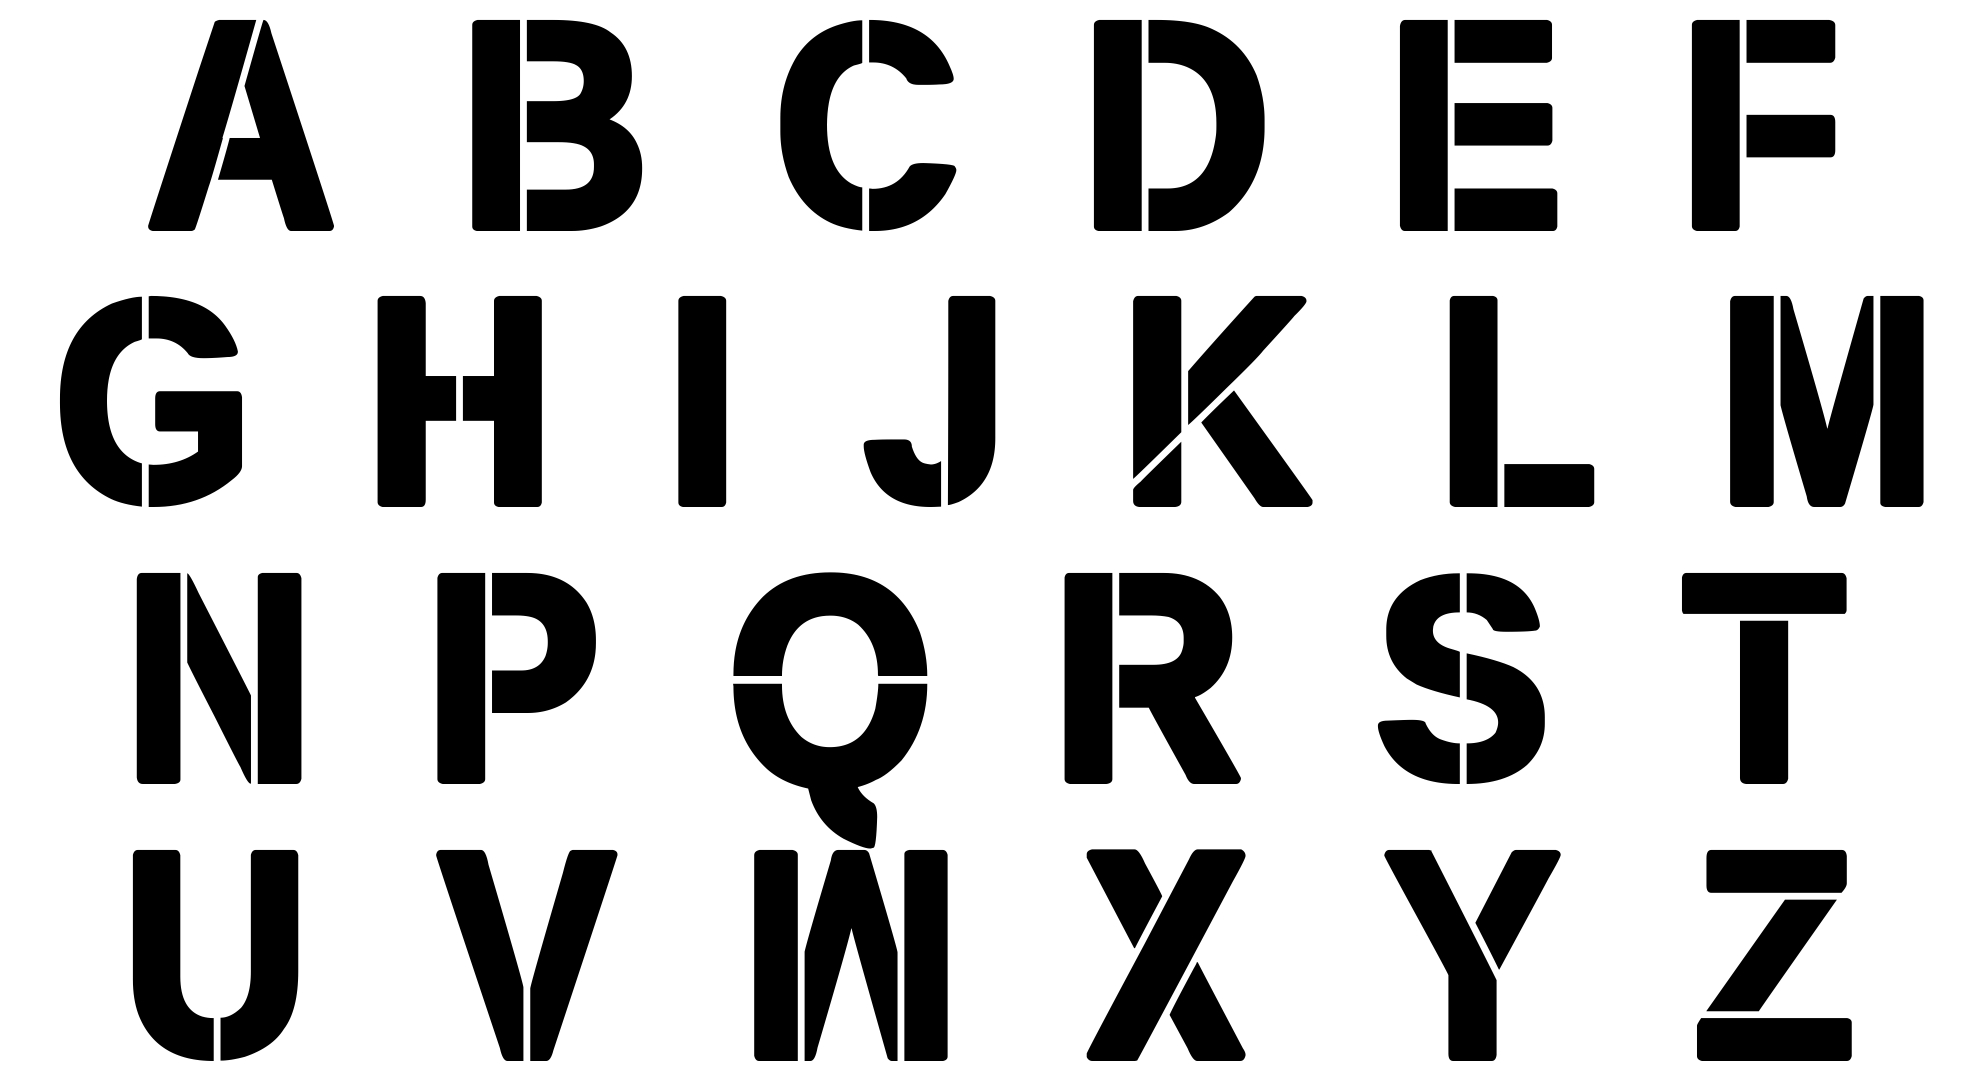 large-alphabet-letters